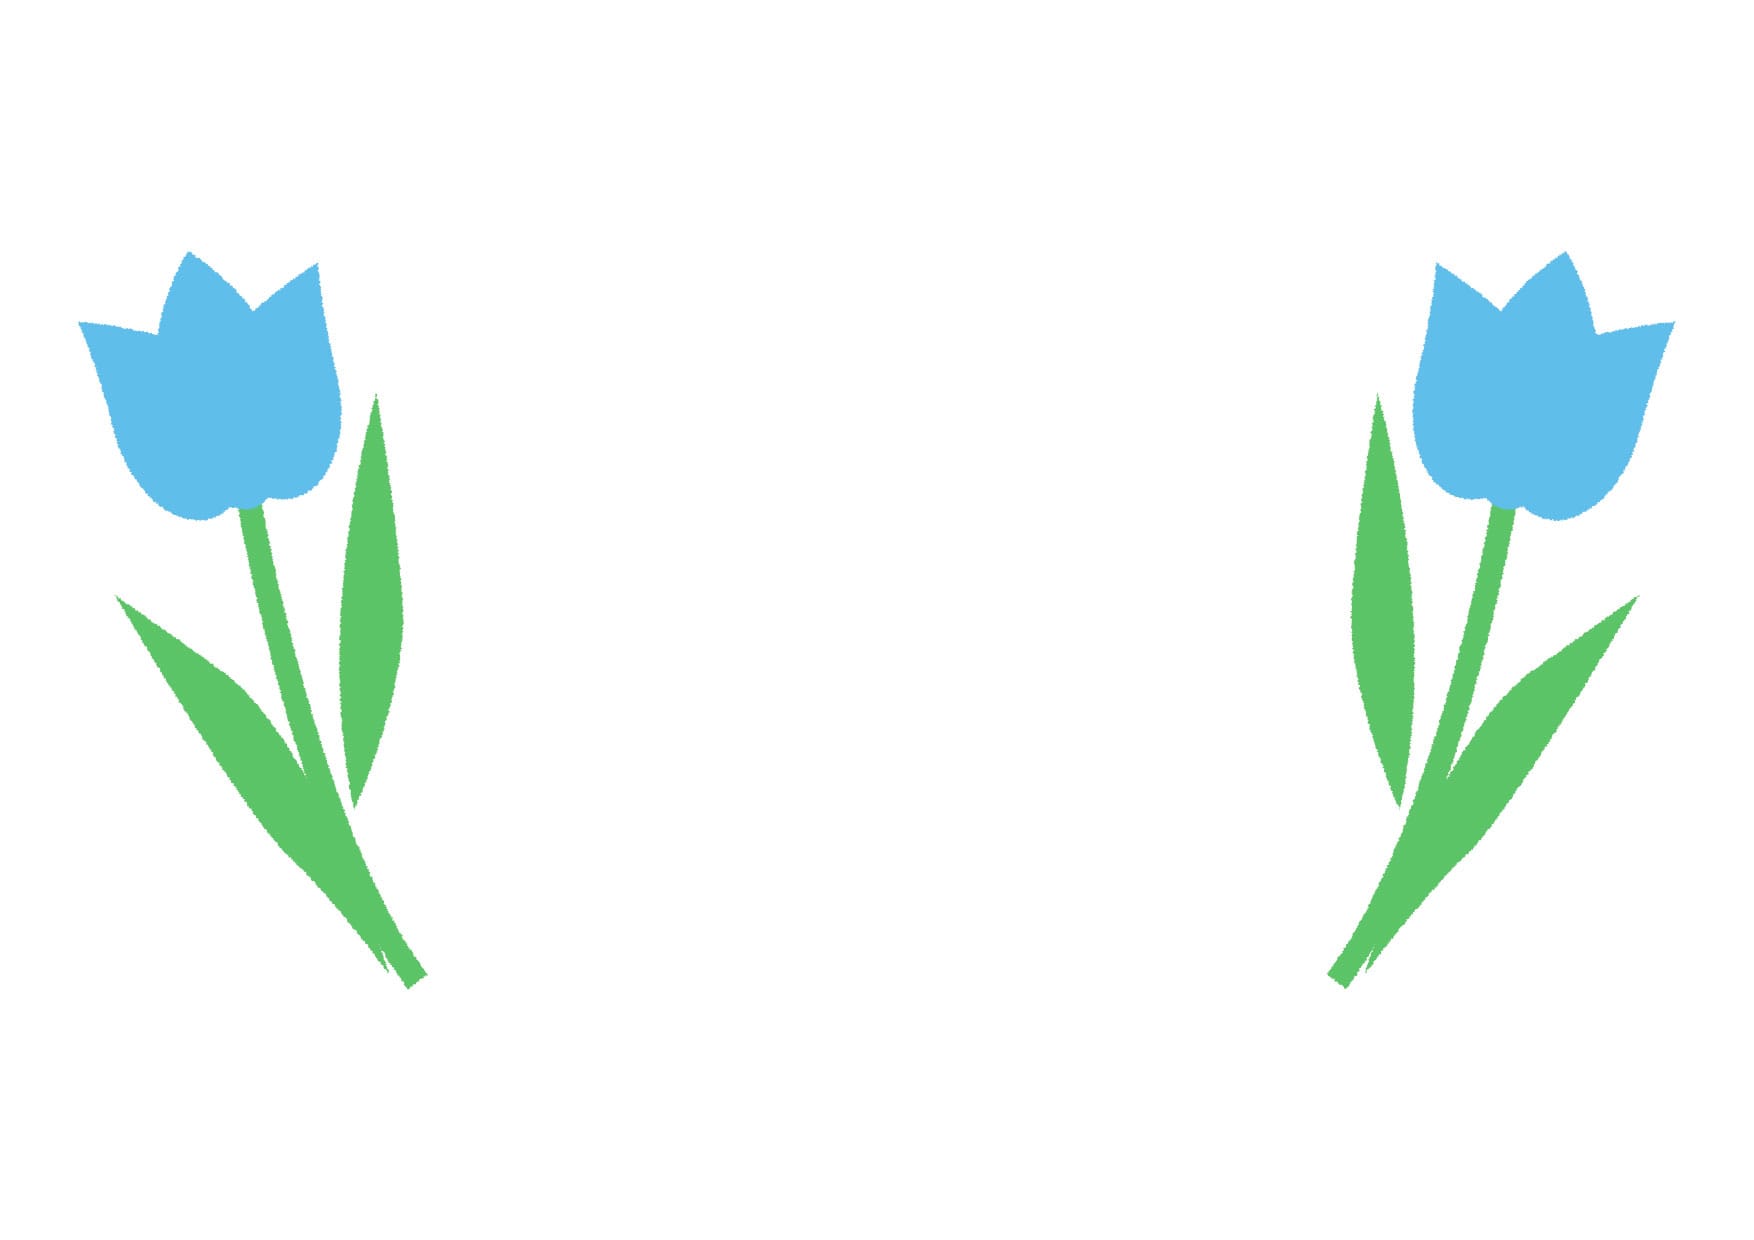 可愛いイラスト無料 チューリップ 青色 背景 Free Illustration Tulip Blue Background 公式 イラスト 素材サイト イラストダウンロード